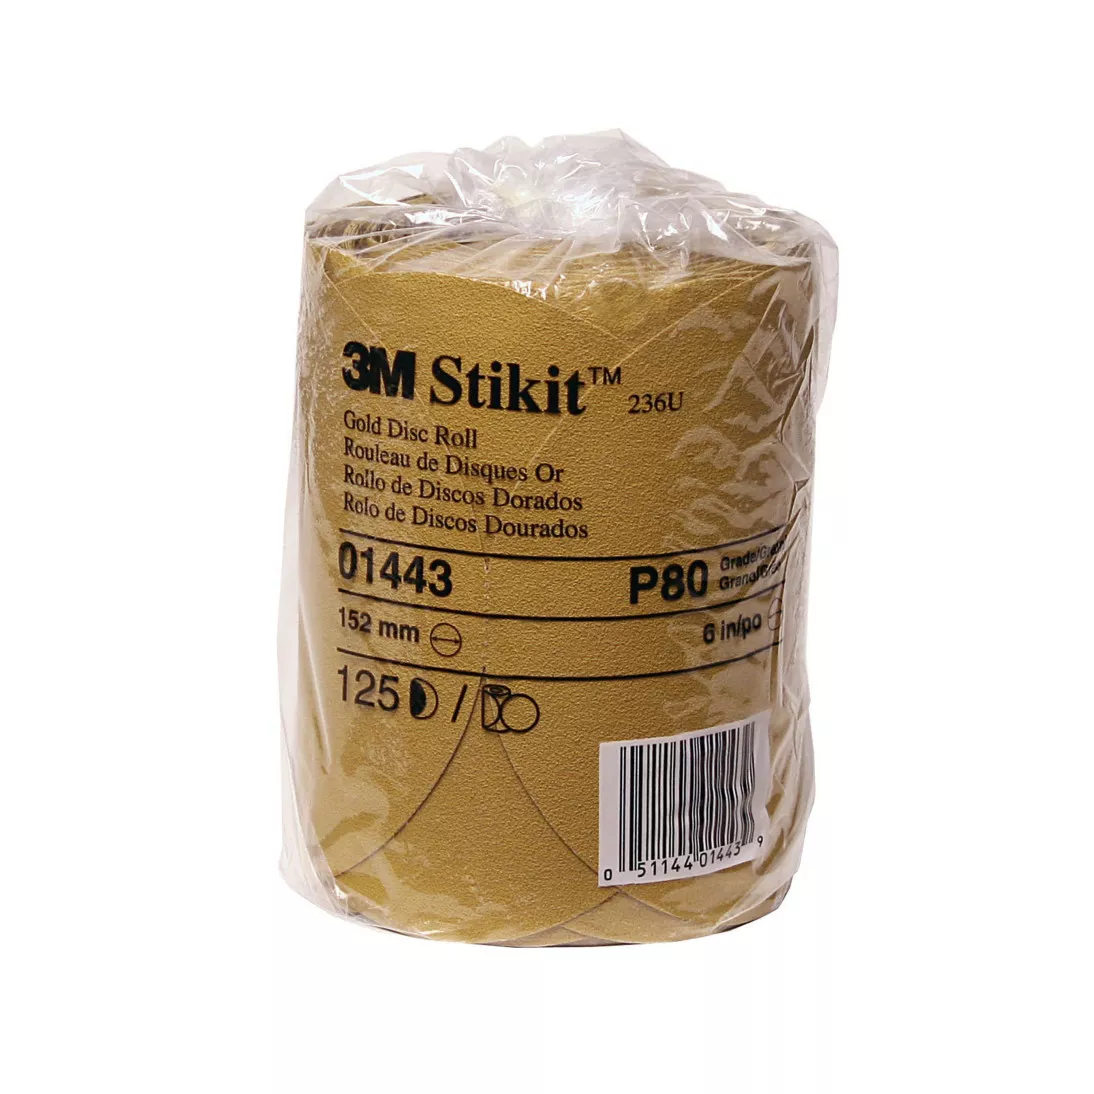 3M™ Stikit™ Gold Disc Roll, 01443, 6 in, P80A, 125 discs per roll, 10
rolls per case